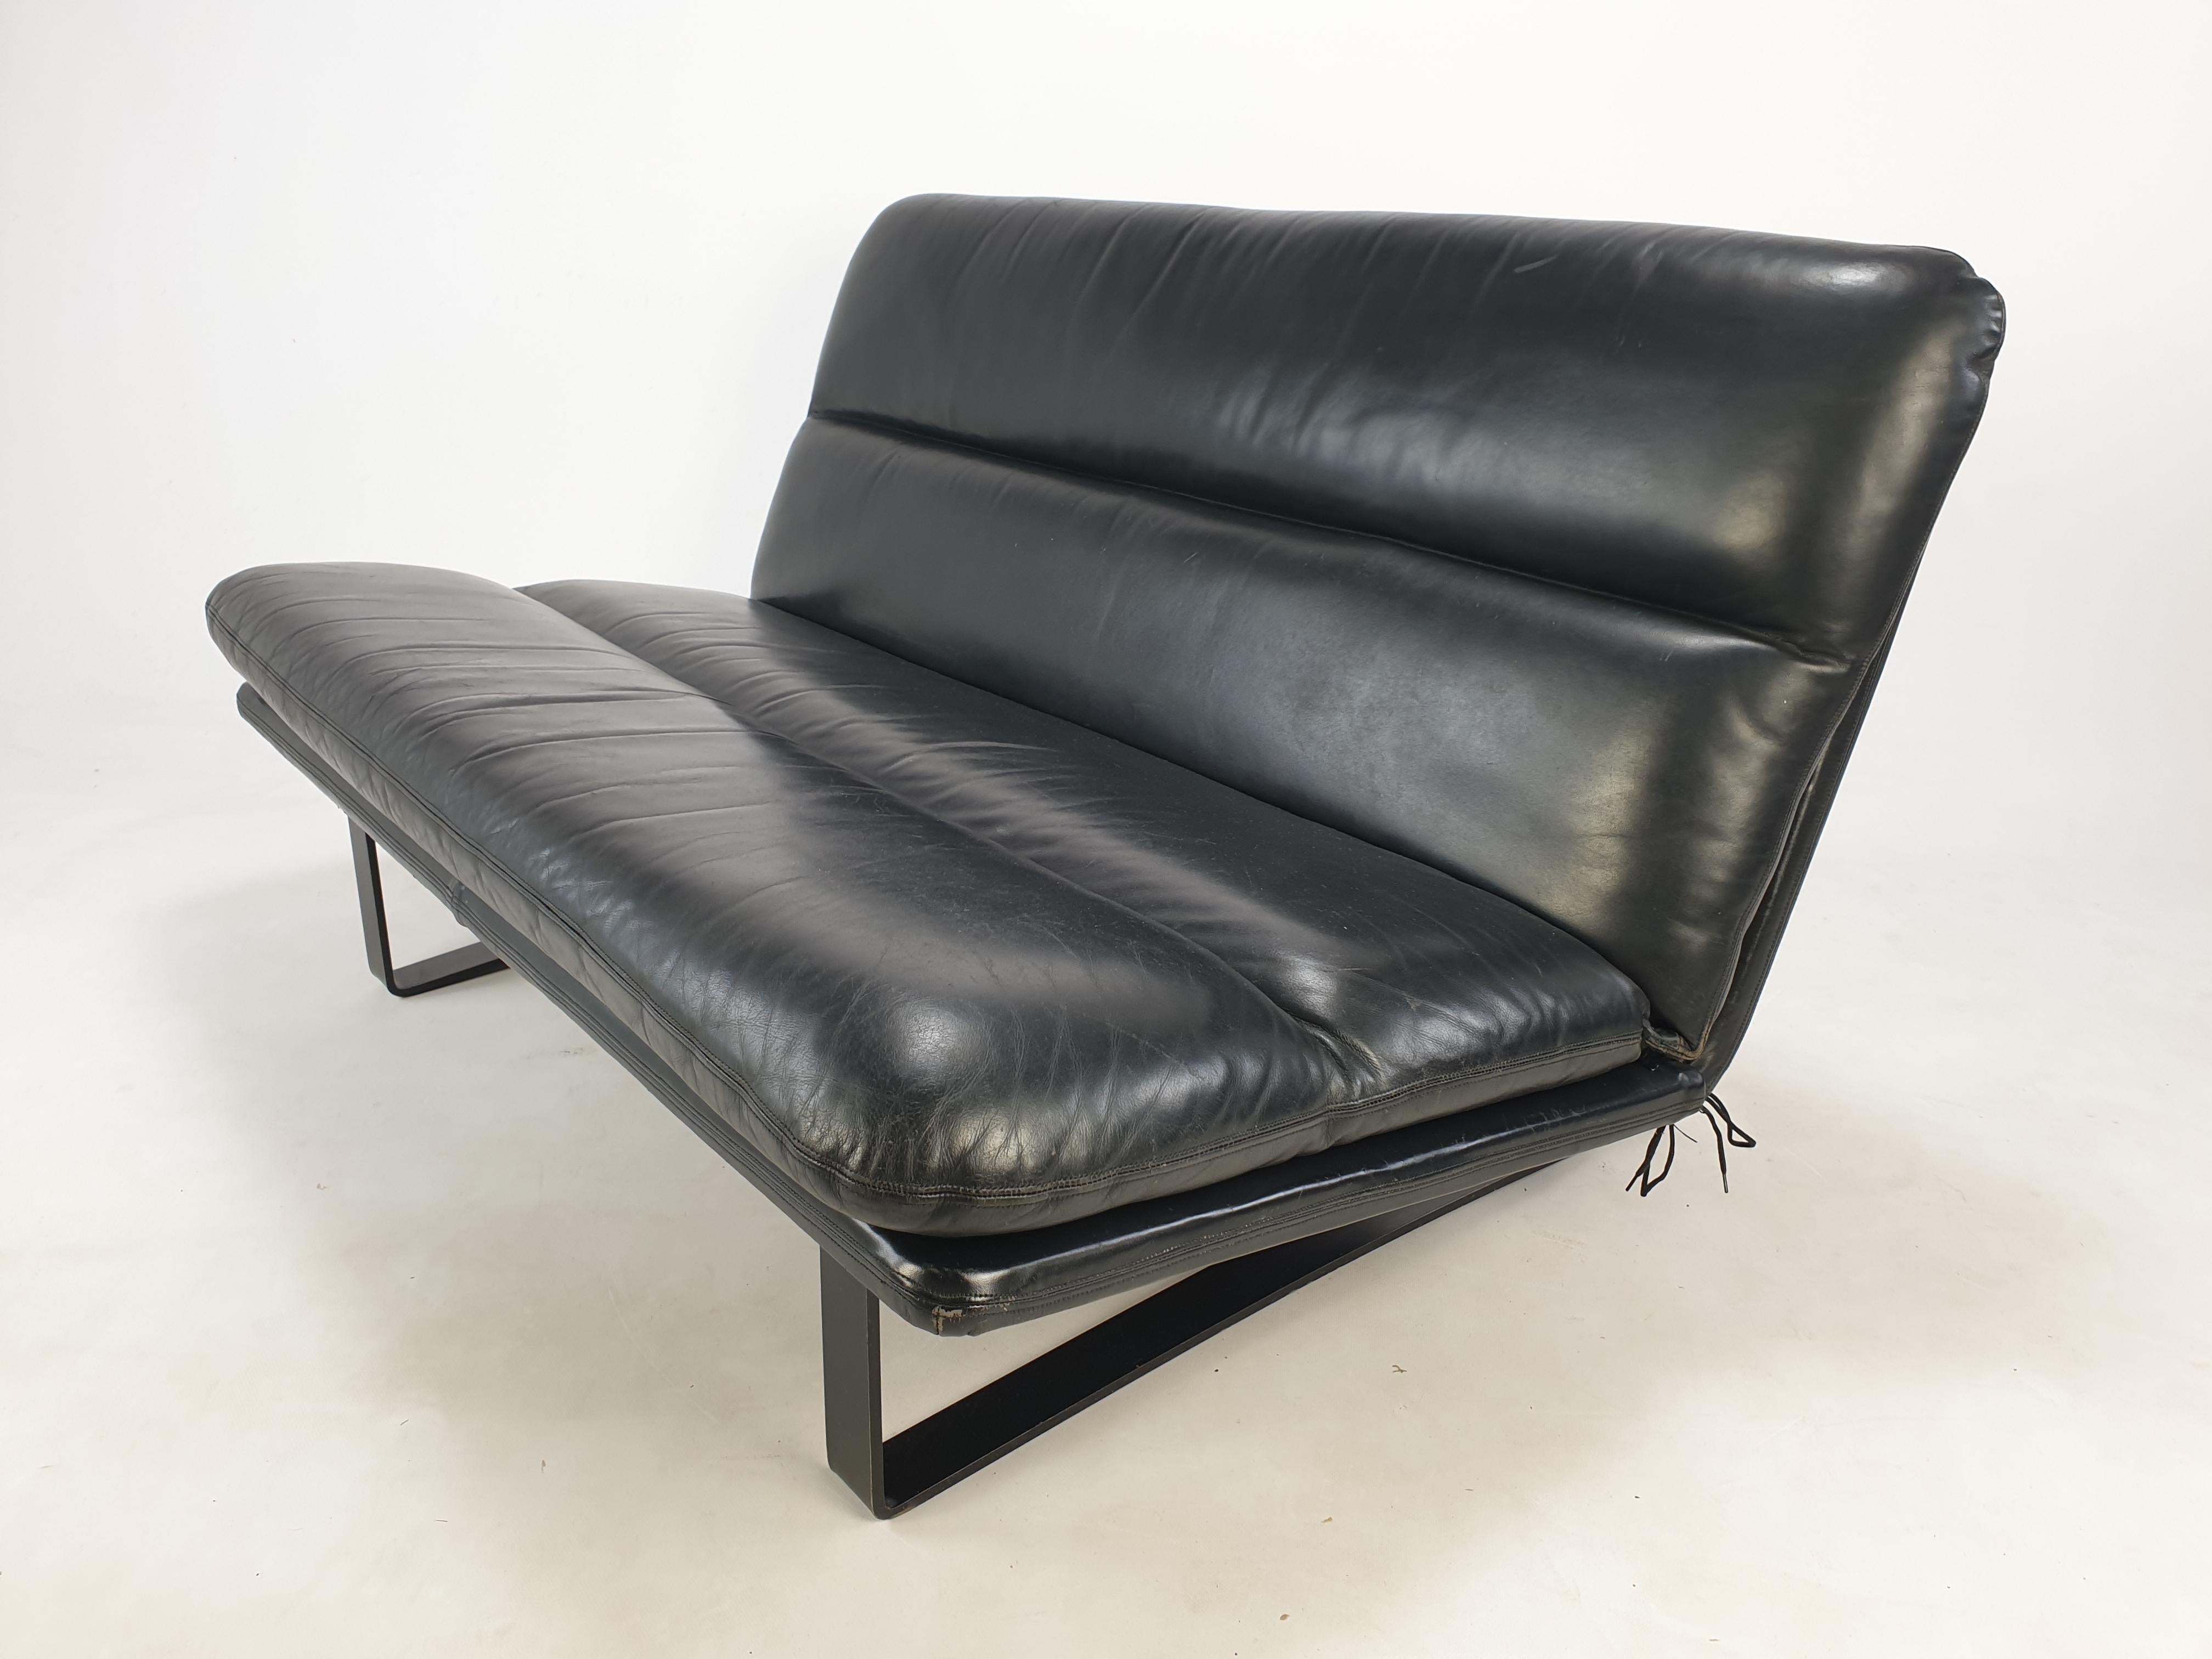 Comfortabele 2-Sitzer-Sofa, entworfen von Kho Liang Ie.
Hergestellt von Artifort in den 60er Jahren. Im Originalzustand.
Sehr solide und qualitativ hochwertig, mit den besten Materialien hergestellt.
Es hat die atemberaubende ursprüngliche